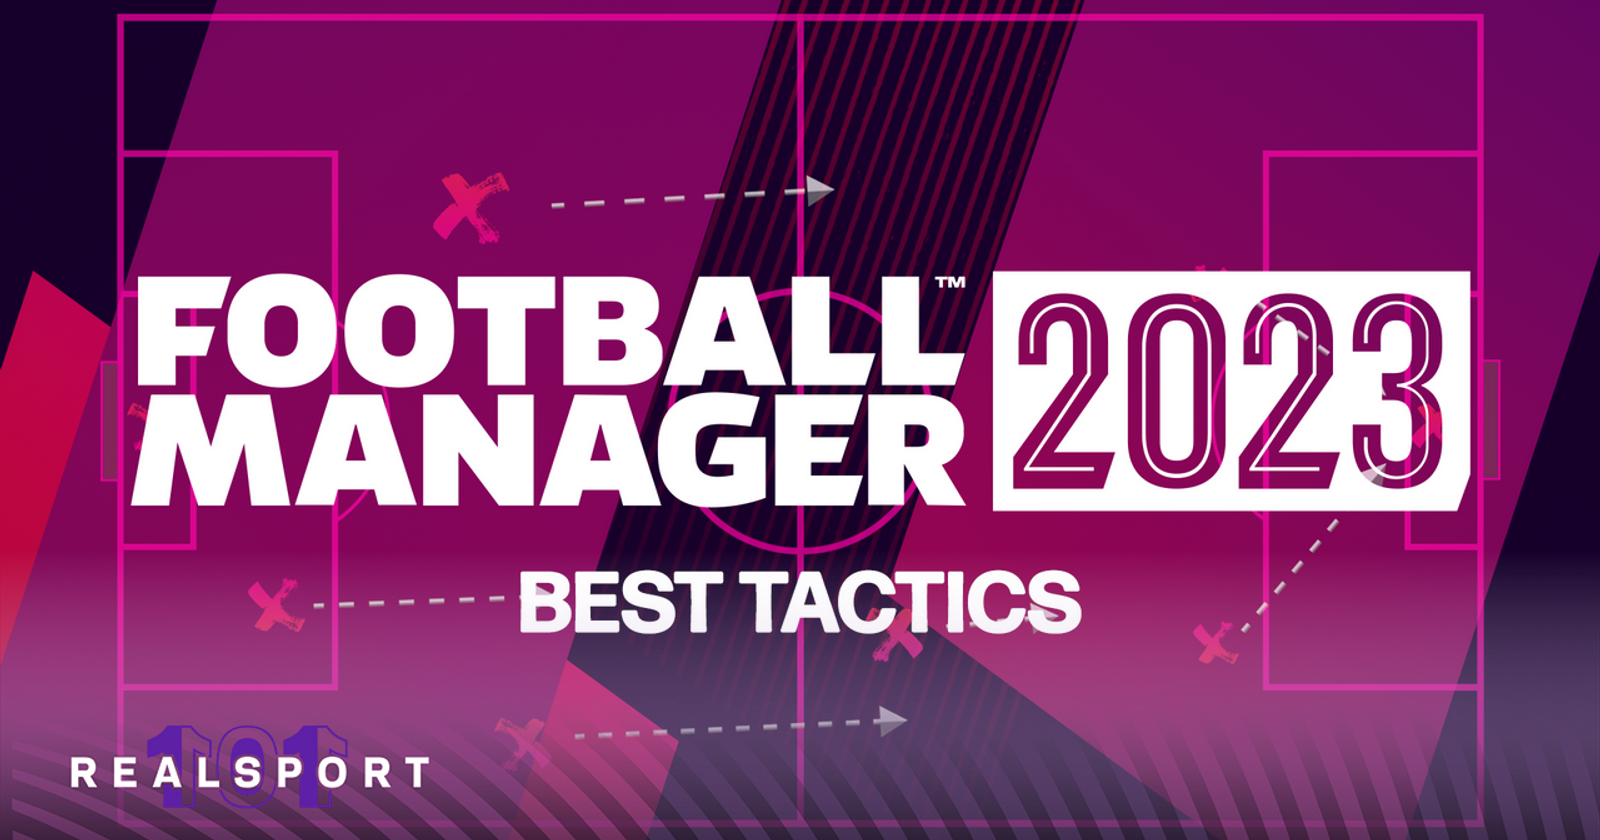 Best FM23 Tactics - Download Tactics for Football Manager 2023